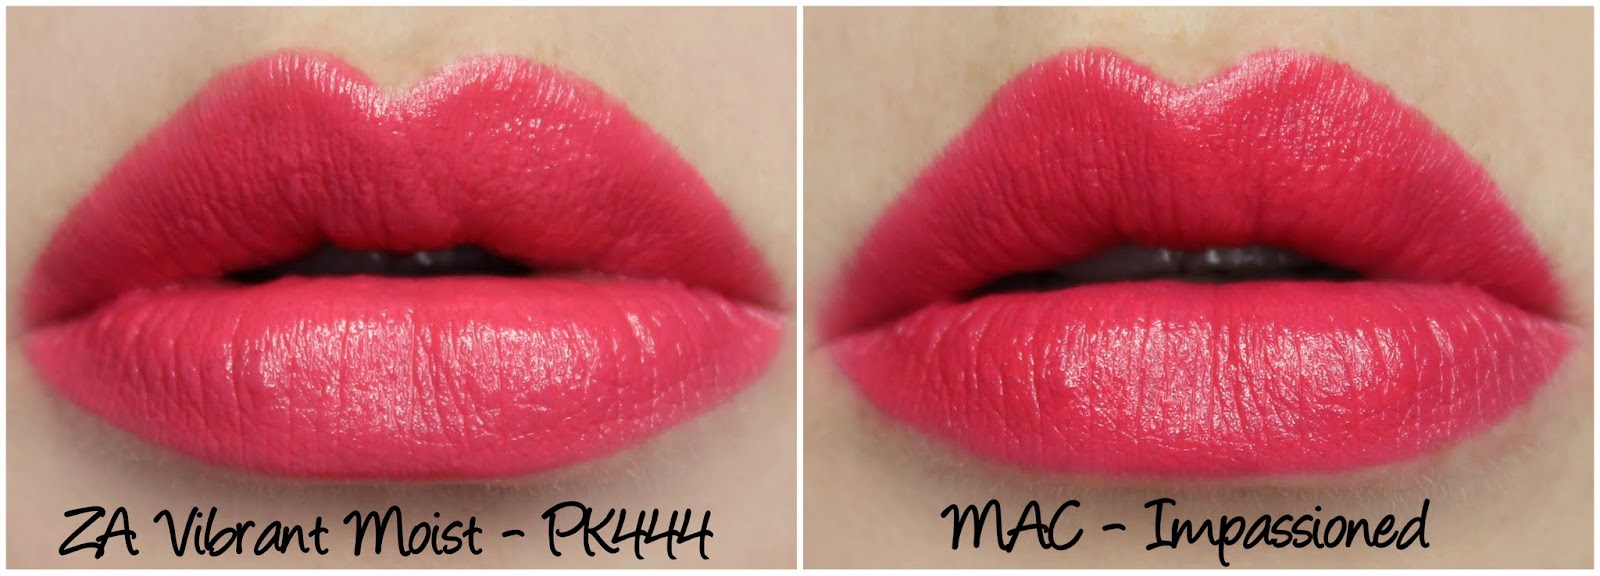 ZA Vibrant Moist - PK444 & MAC Impassioned lipstick comparison